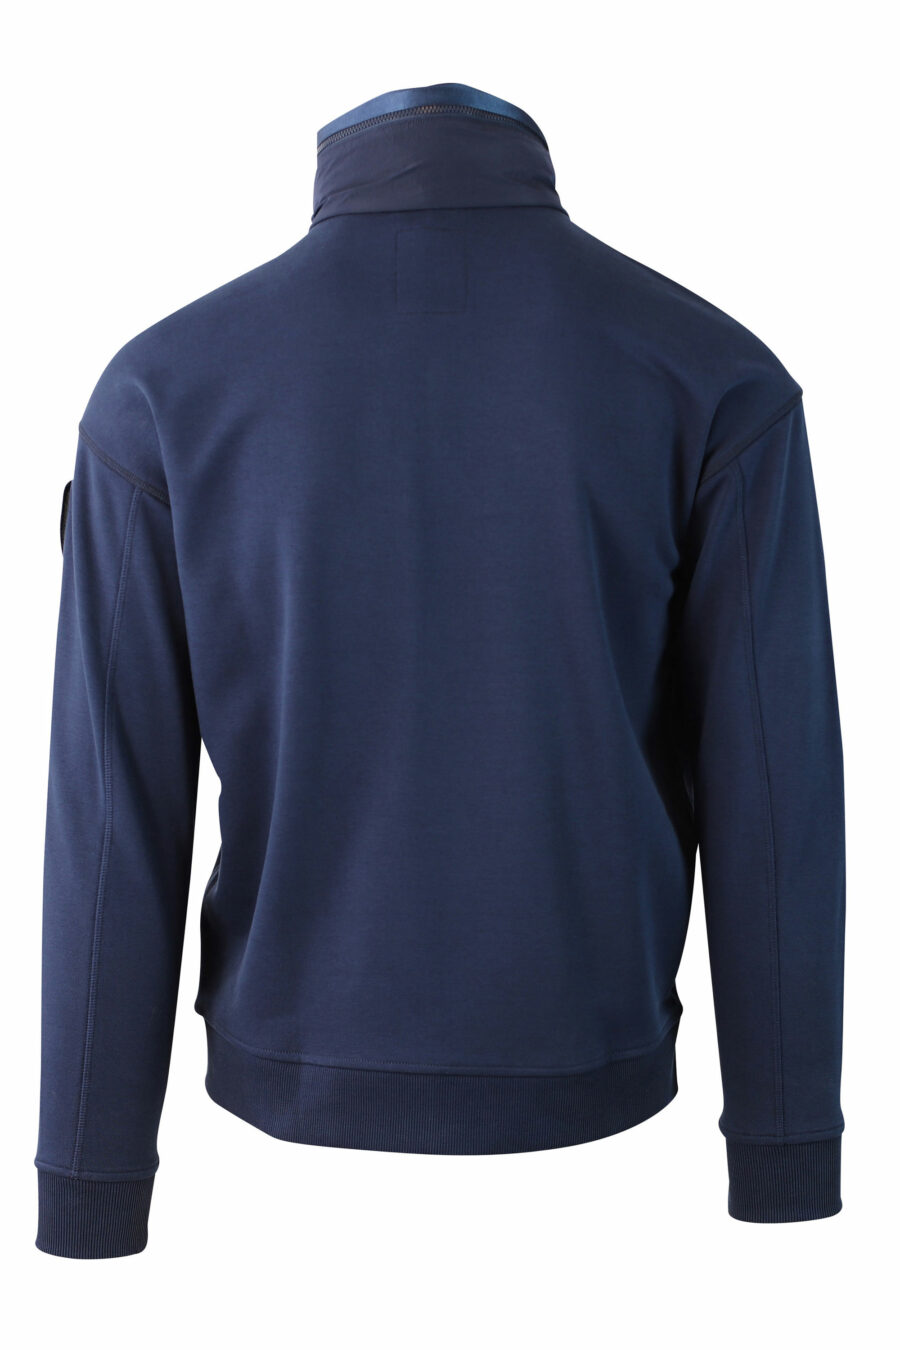 Blaues Fleece-Sweatshirt mit Reißverschluss und Aufnäher - IMG 0029 1